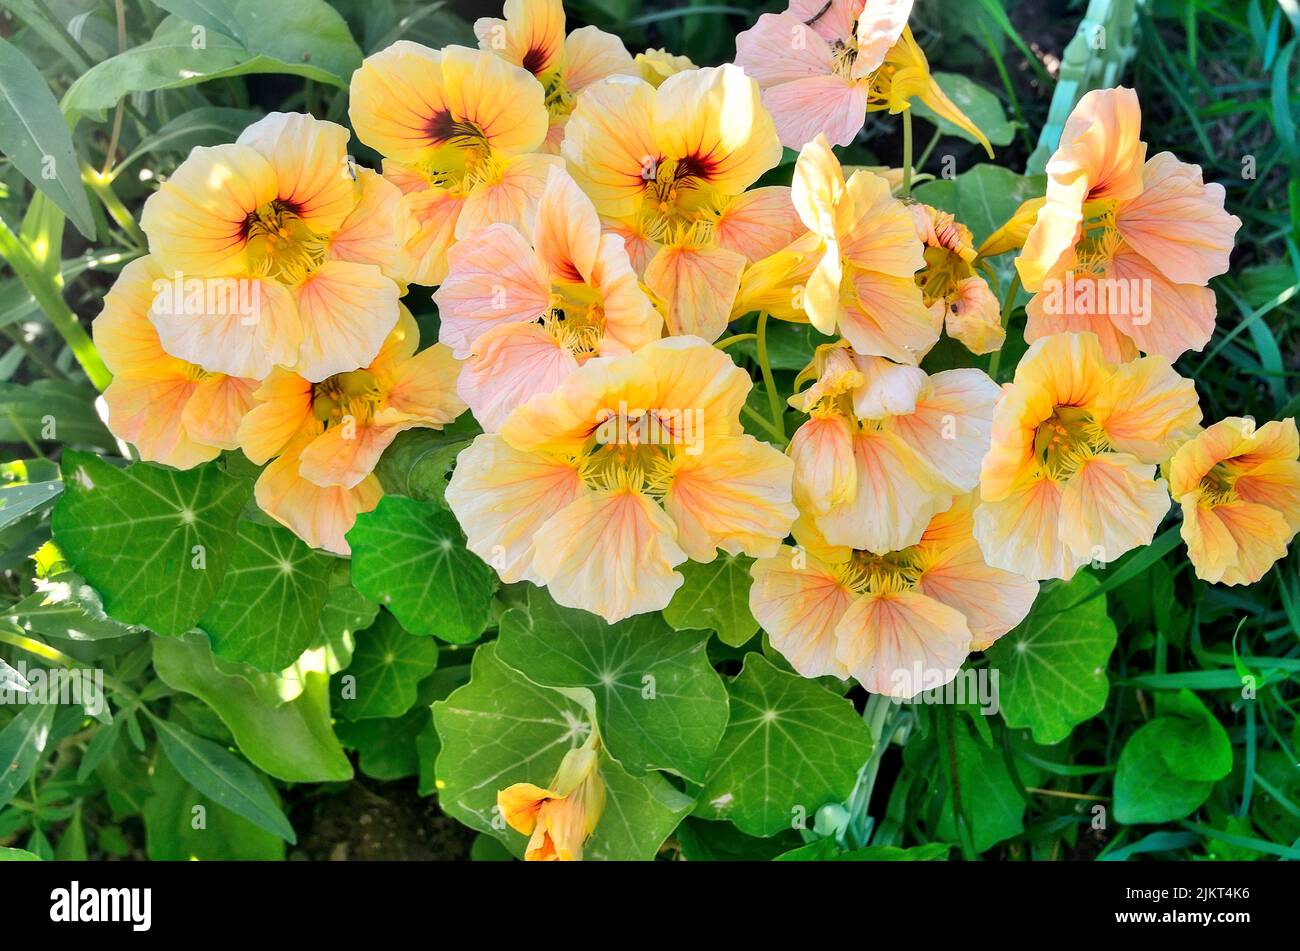 Nasturtium floreciendo en el jardín de verano. Hermoso fondo floral romántico con delicadas flores de un inusual color amarillo-rosa. Floricultura y. Foto de stock